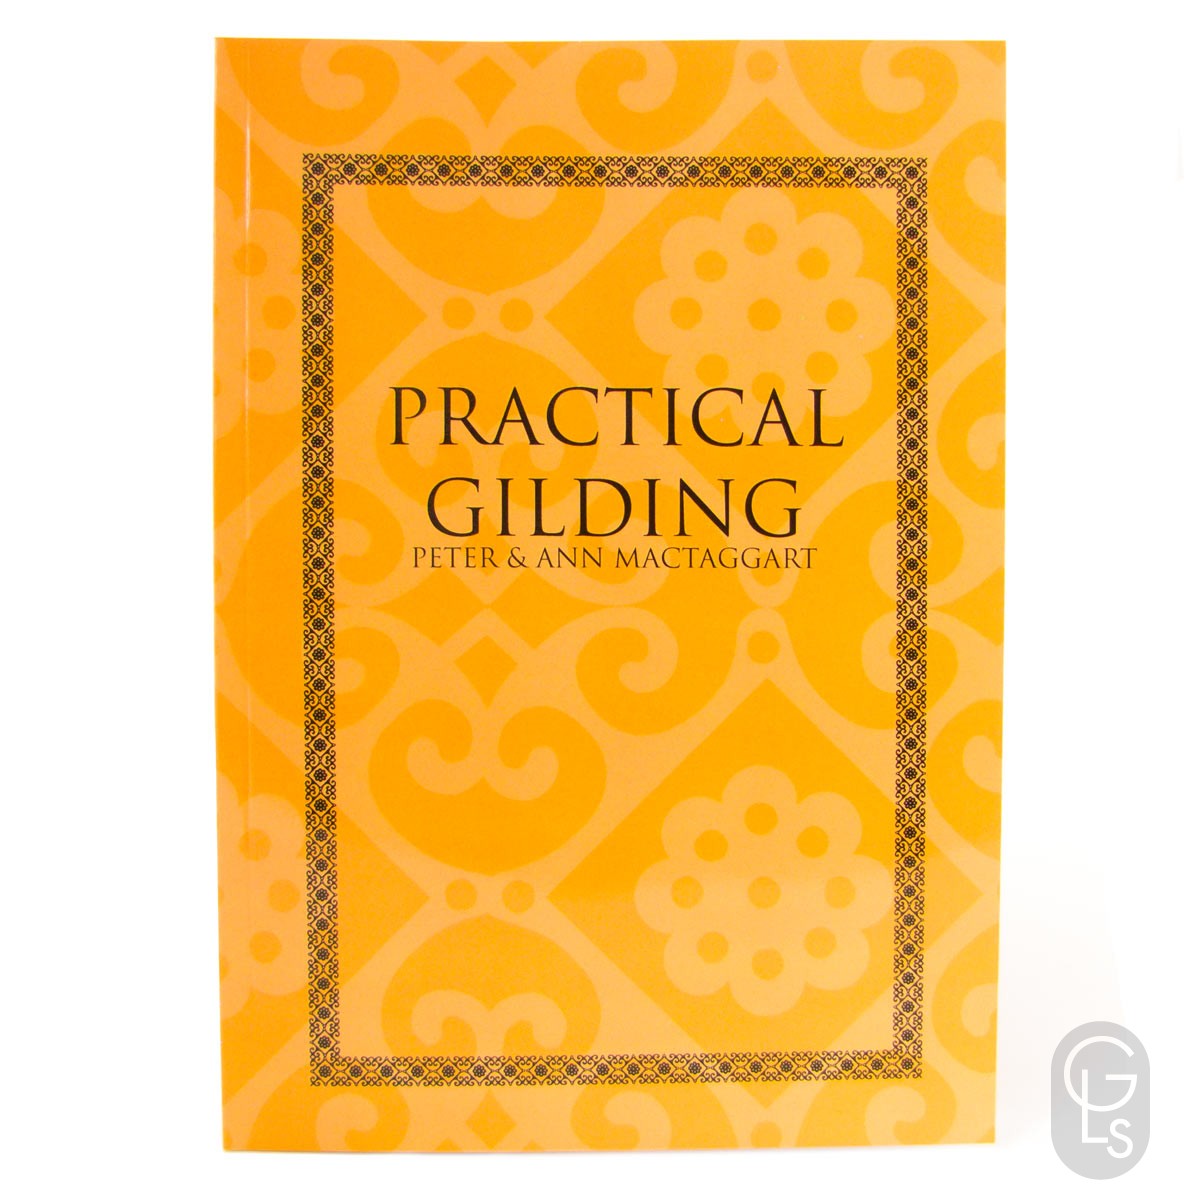 Practical Gilding